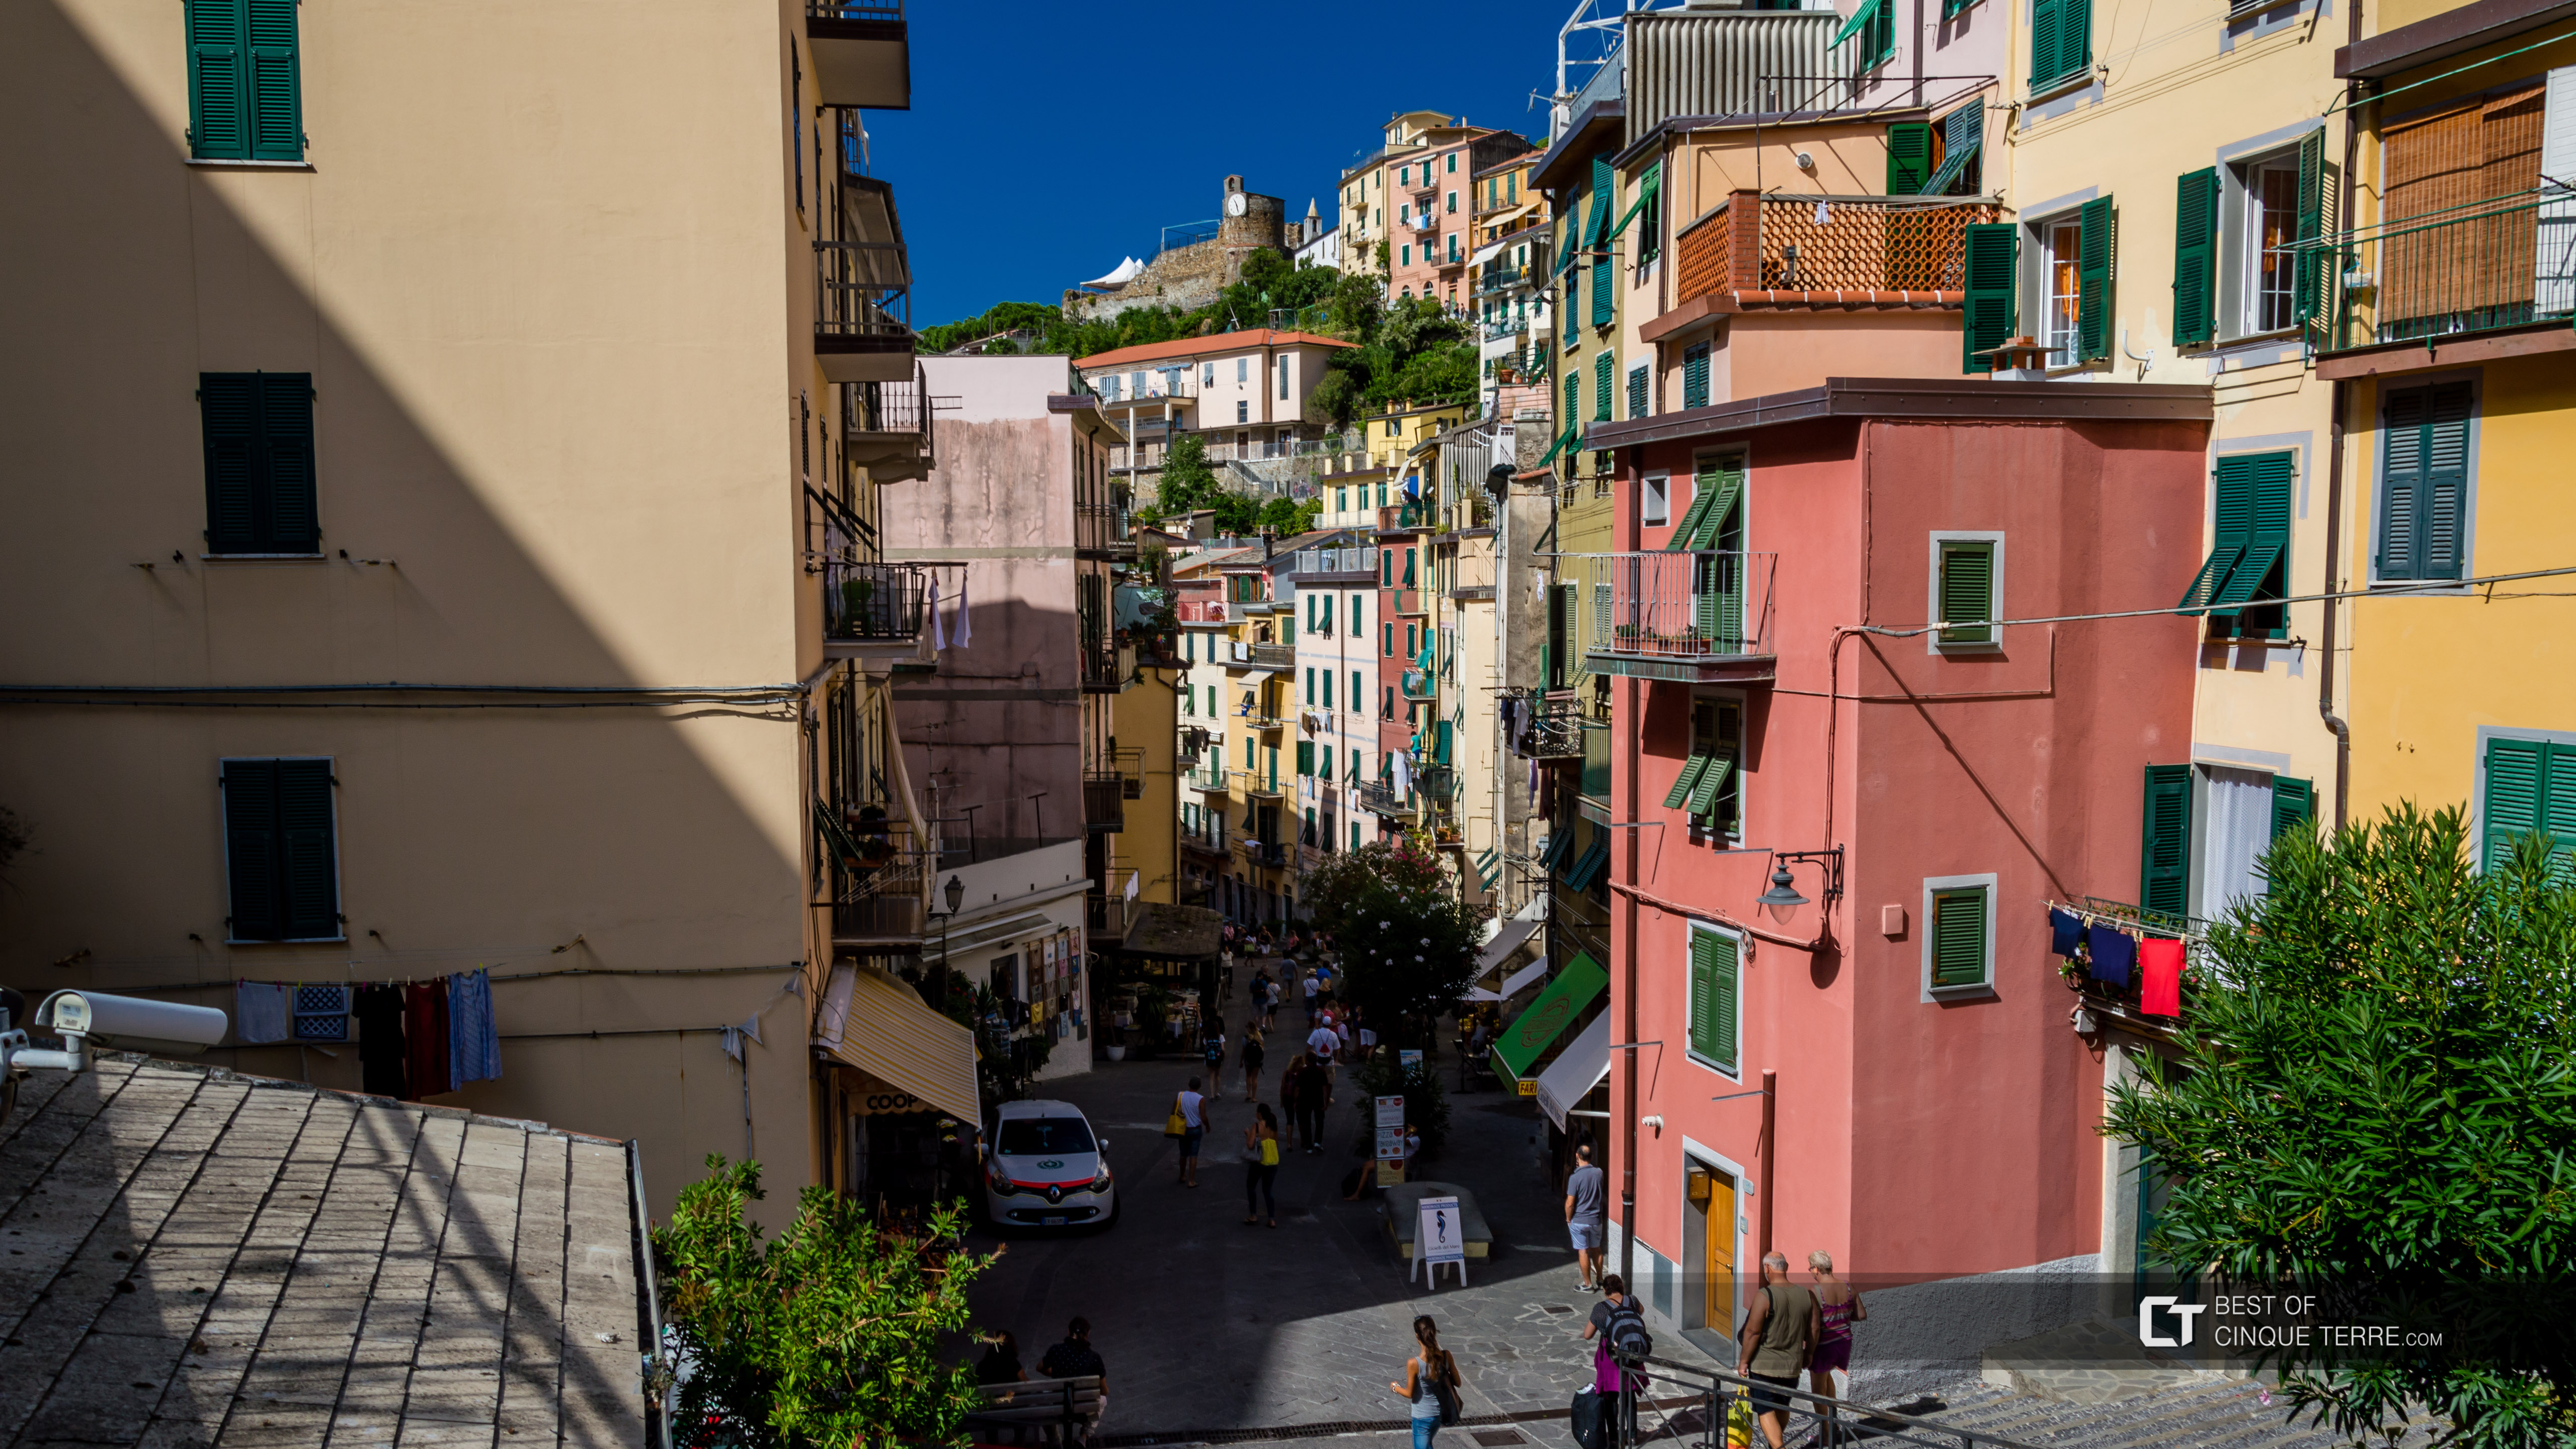 La calle principal, Riomaggiore, Cinque Terre, Italia